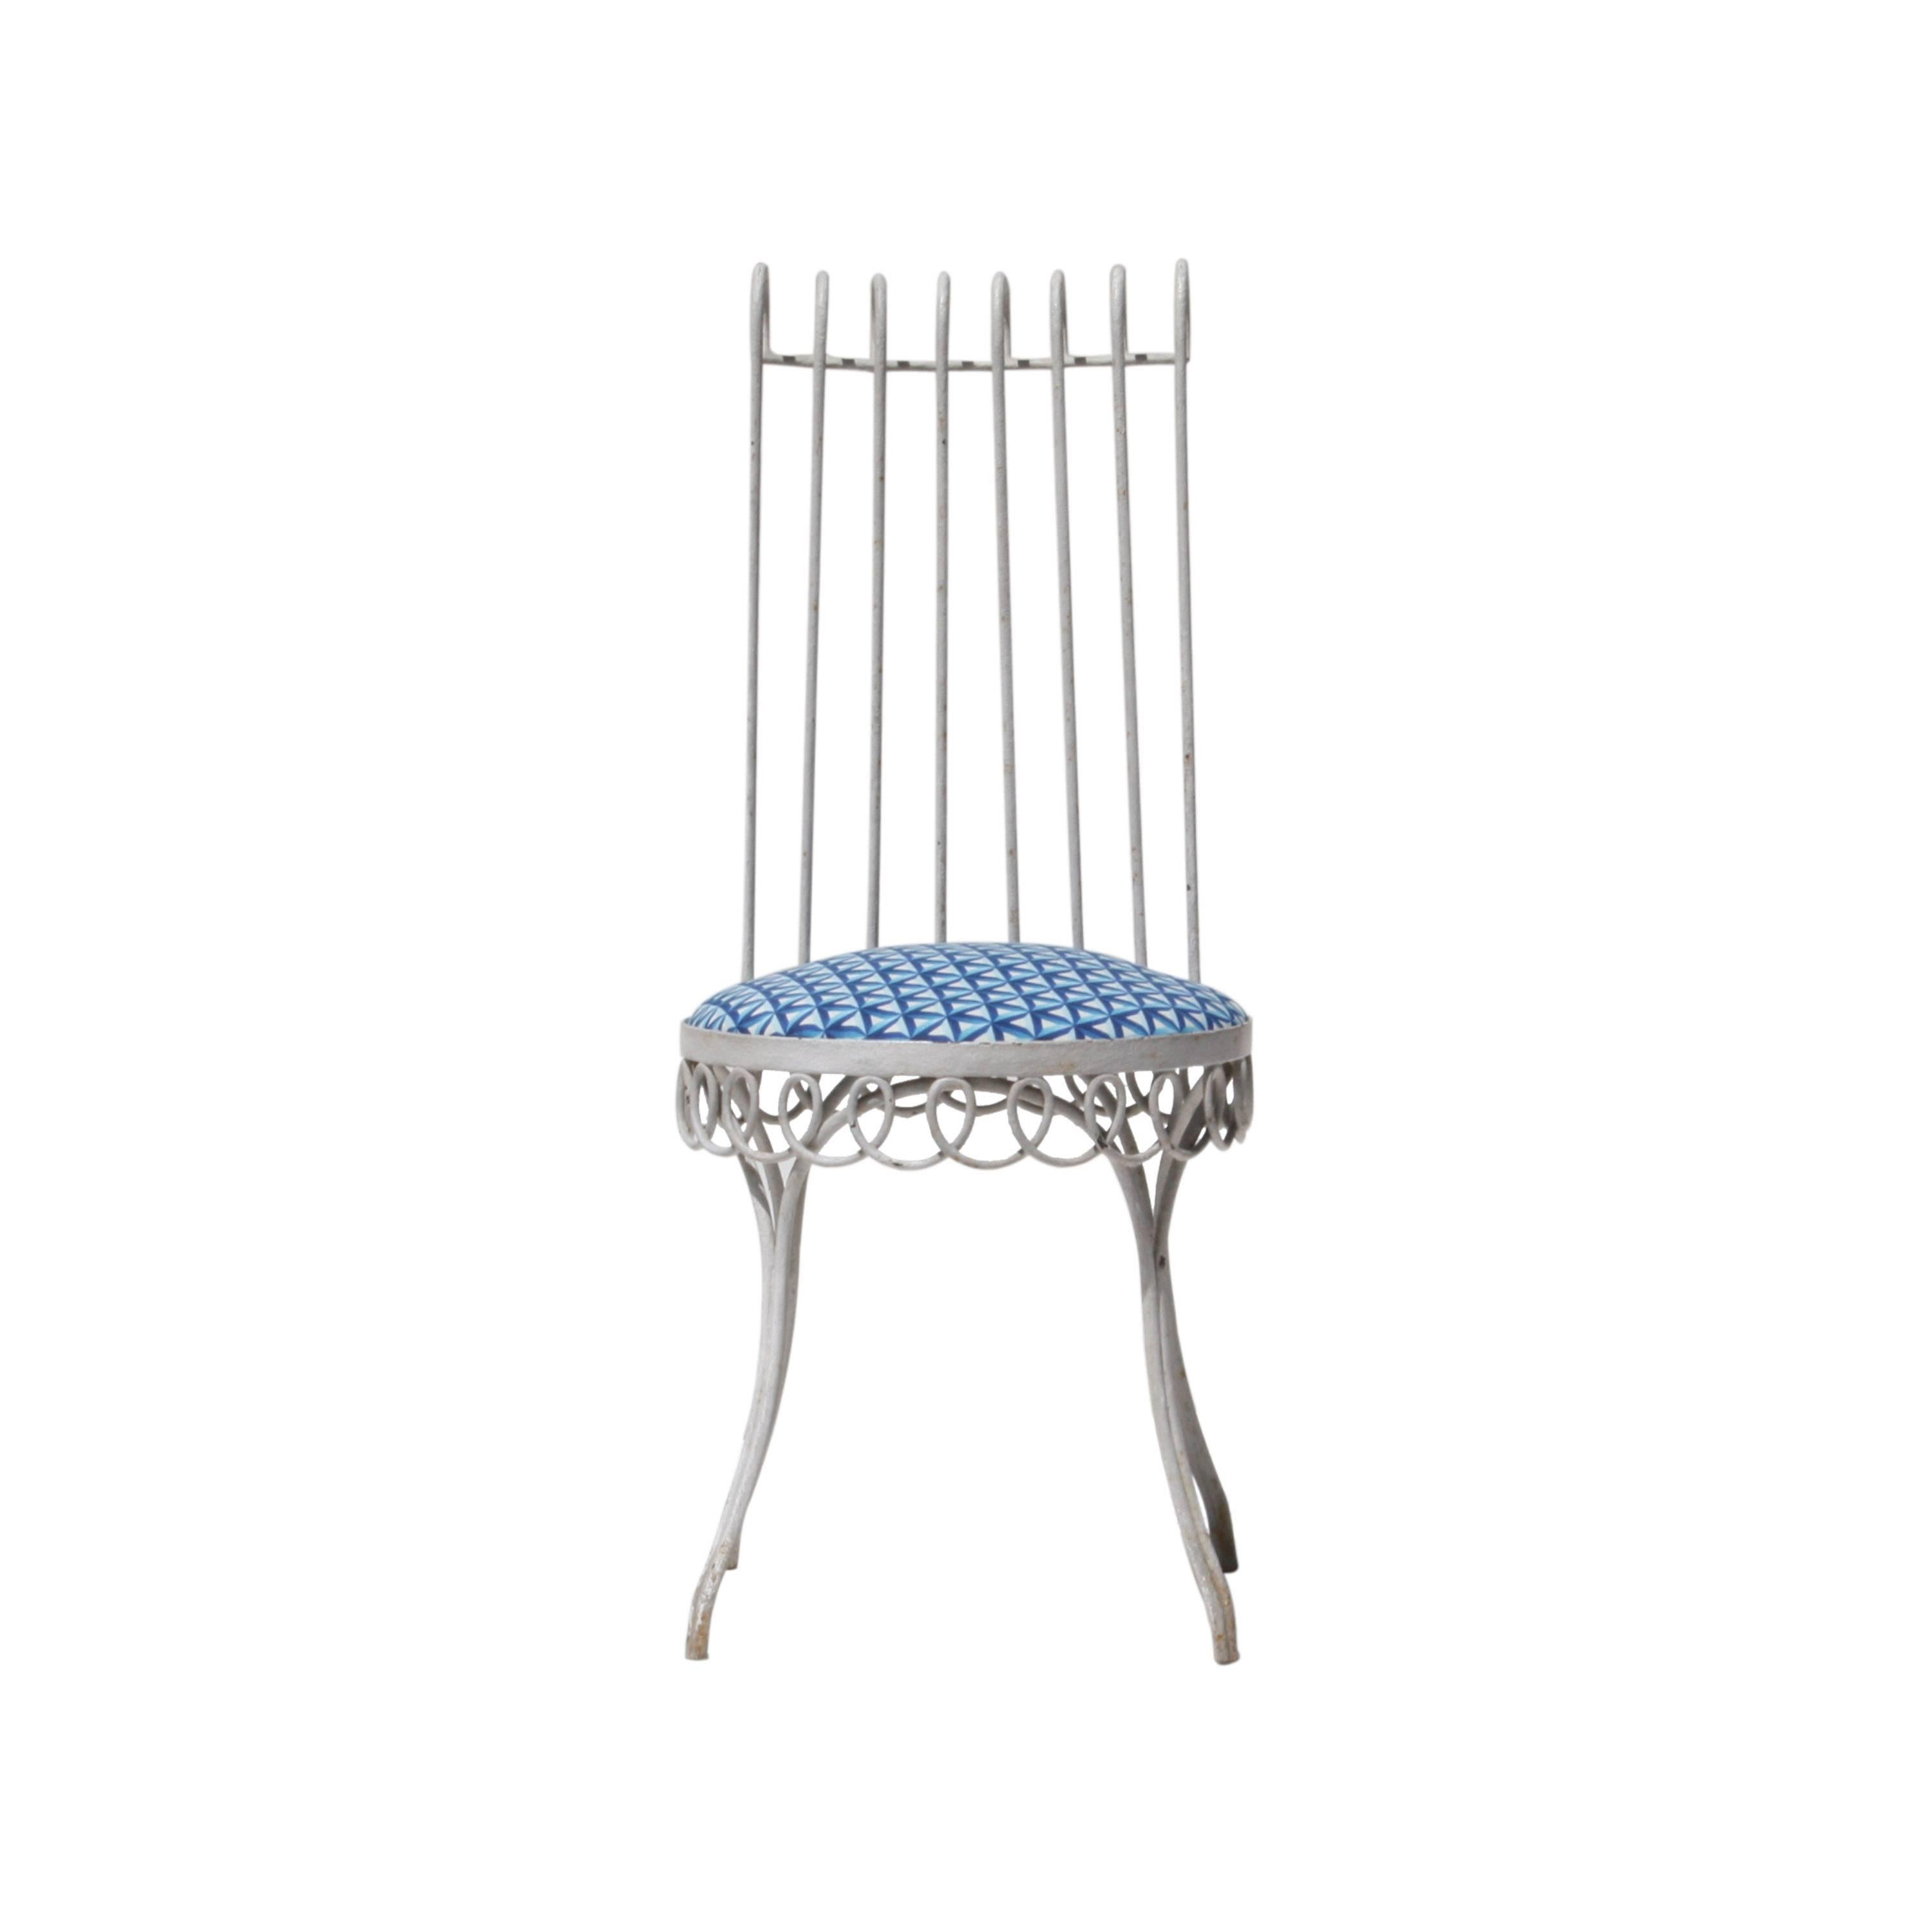 Ensemble de quatre chaises conçues par Mathieu Matégot. Structure en forge laquée blanche et assise restaurée avec revêtement en tissu de coton géométrique bleu.